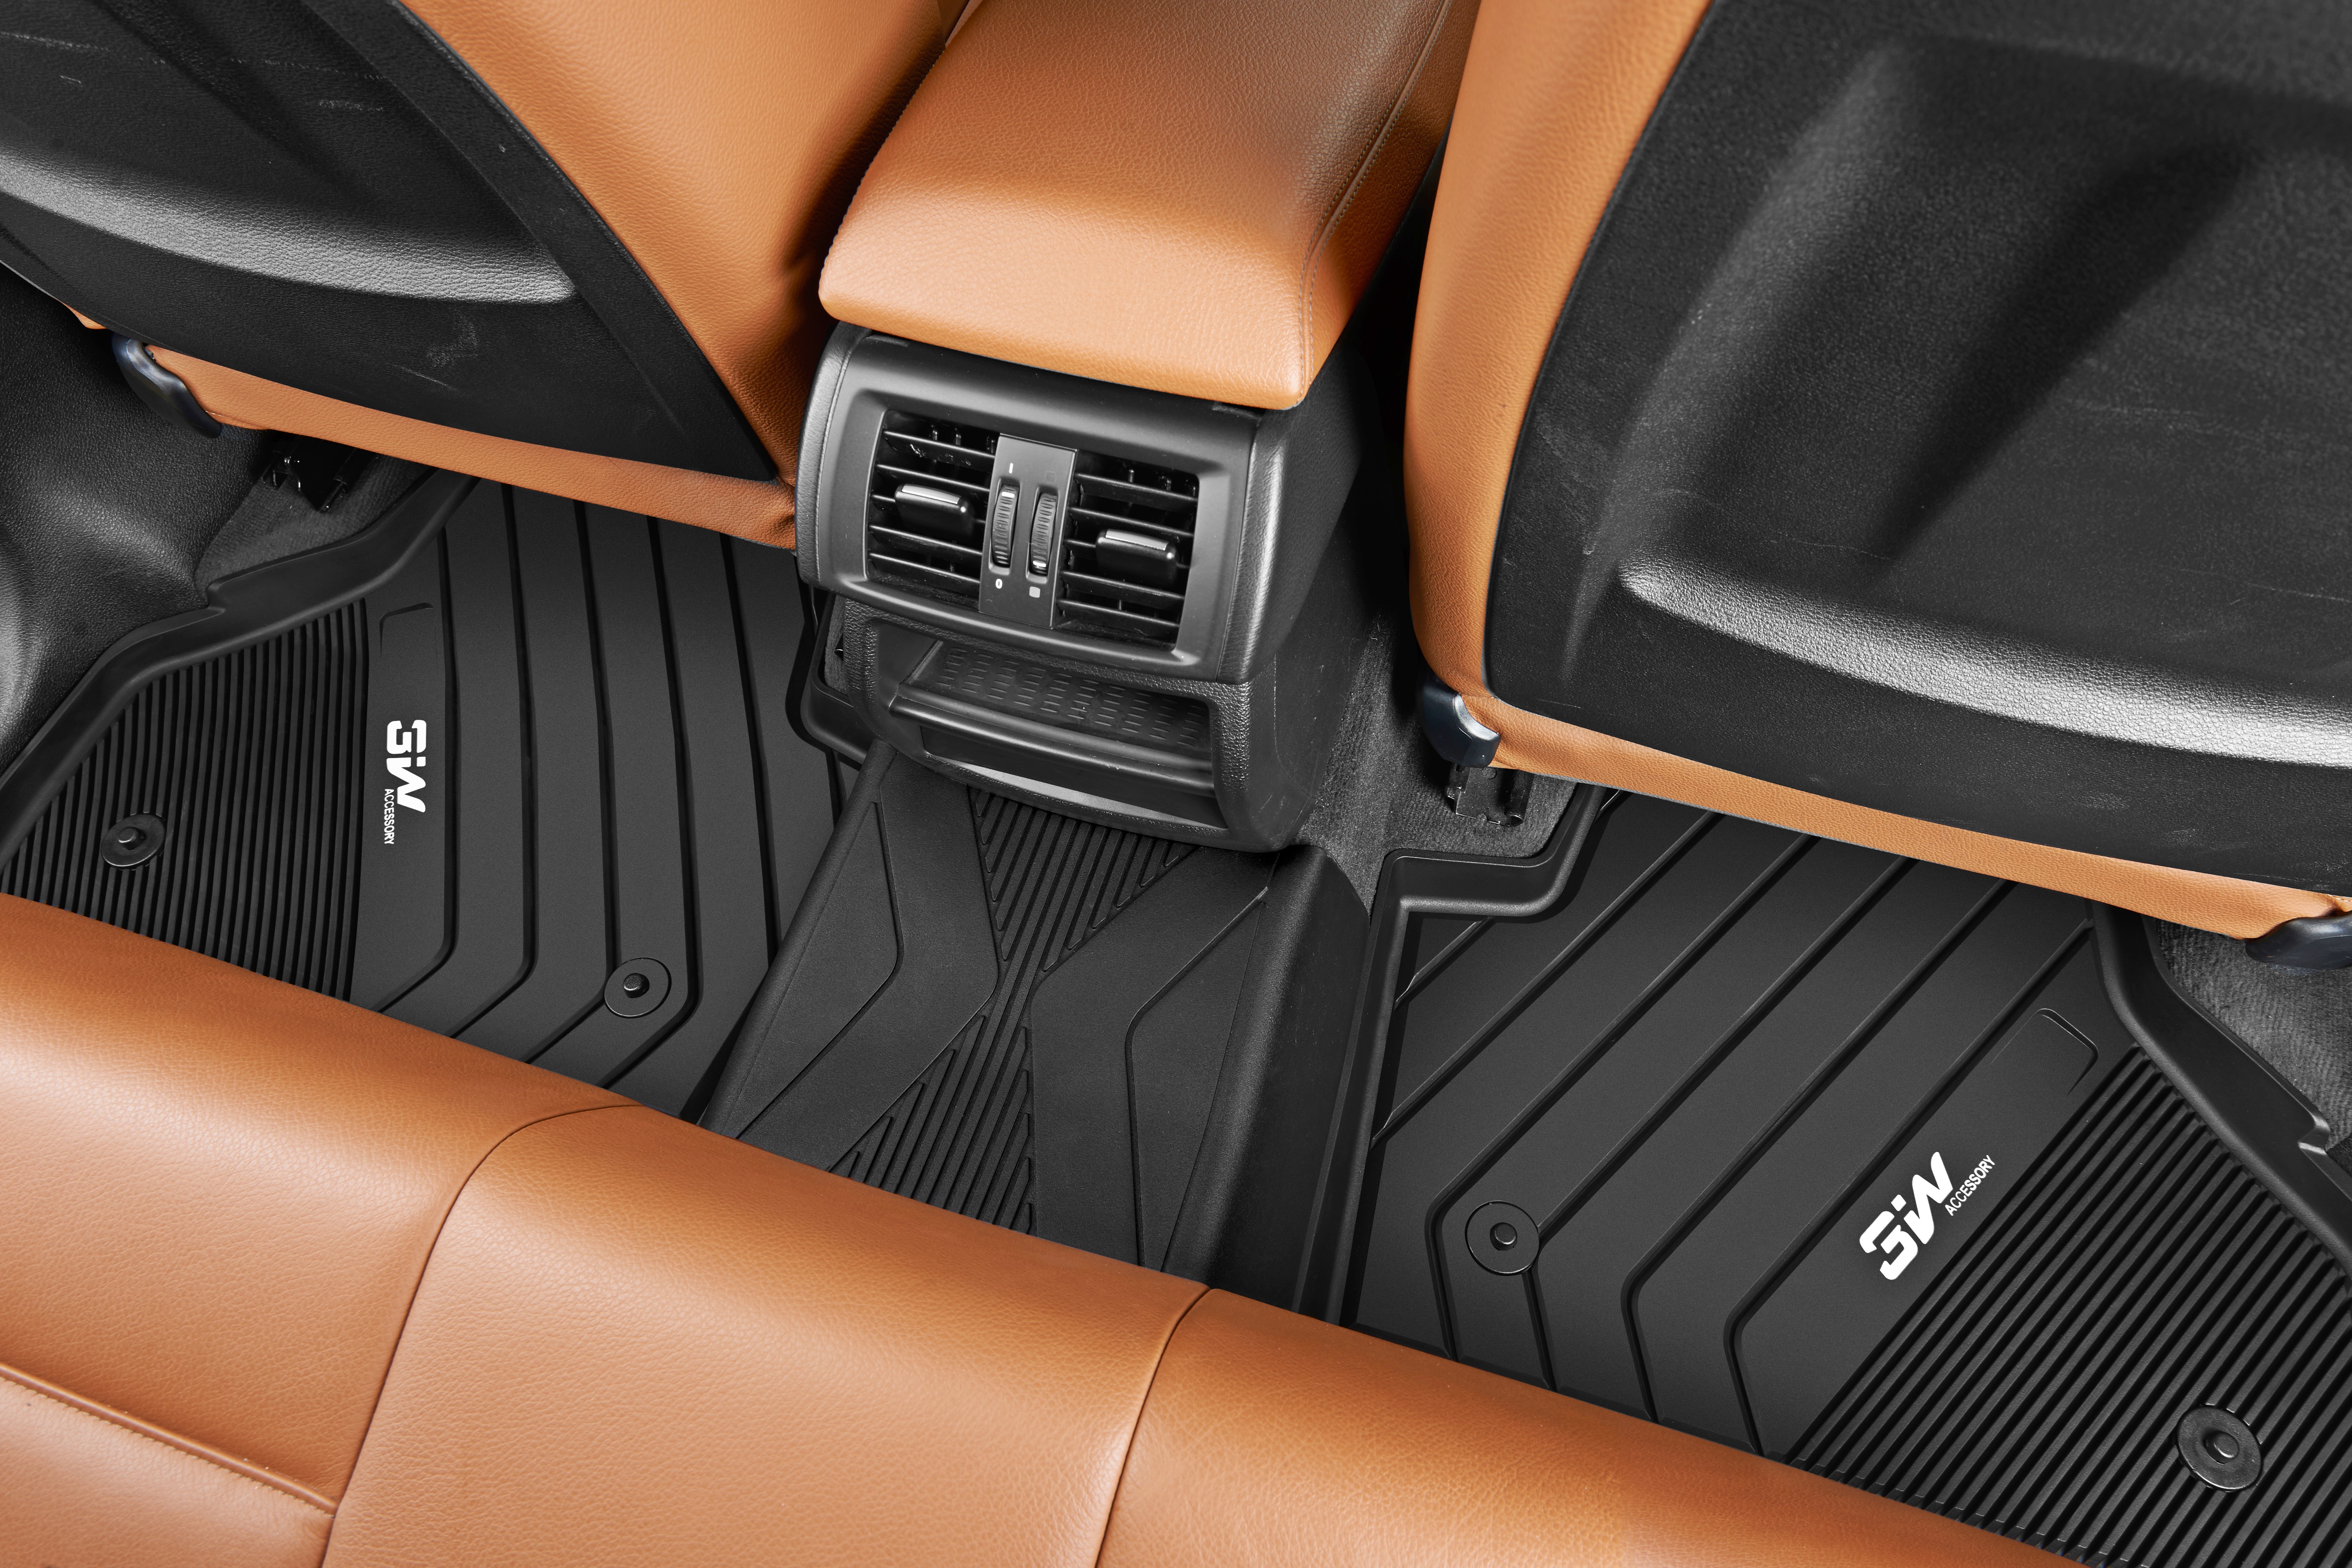 Thảm lót sàn xe ô tô BMW X4 2020- nhãn hiệu Macsim 3W - chất liệu nhựa TPE đúc khuôn cao cấp - màu đen